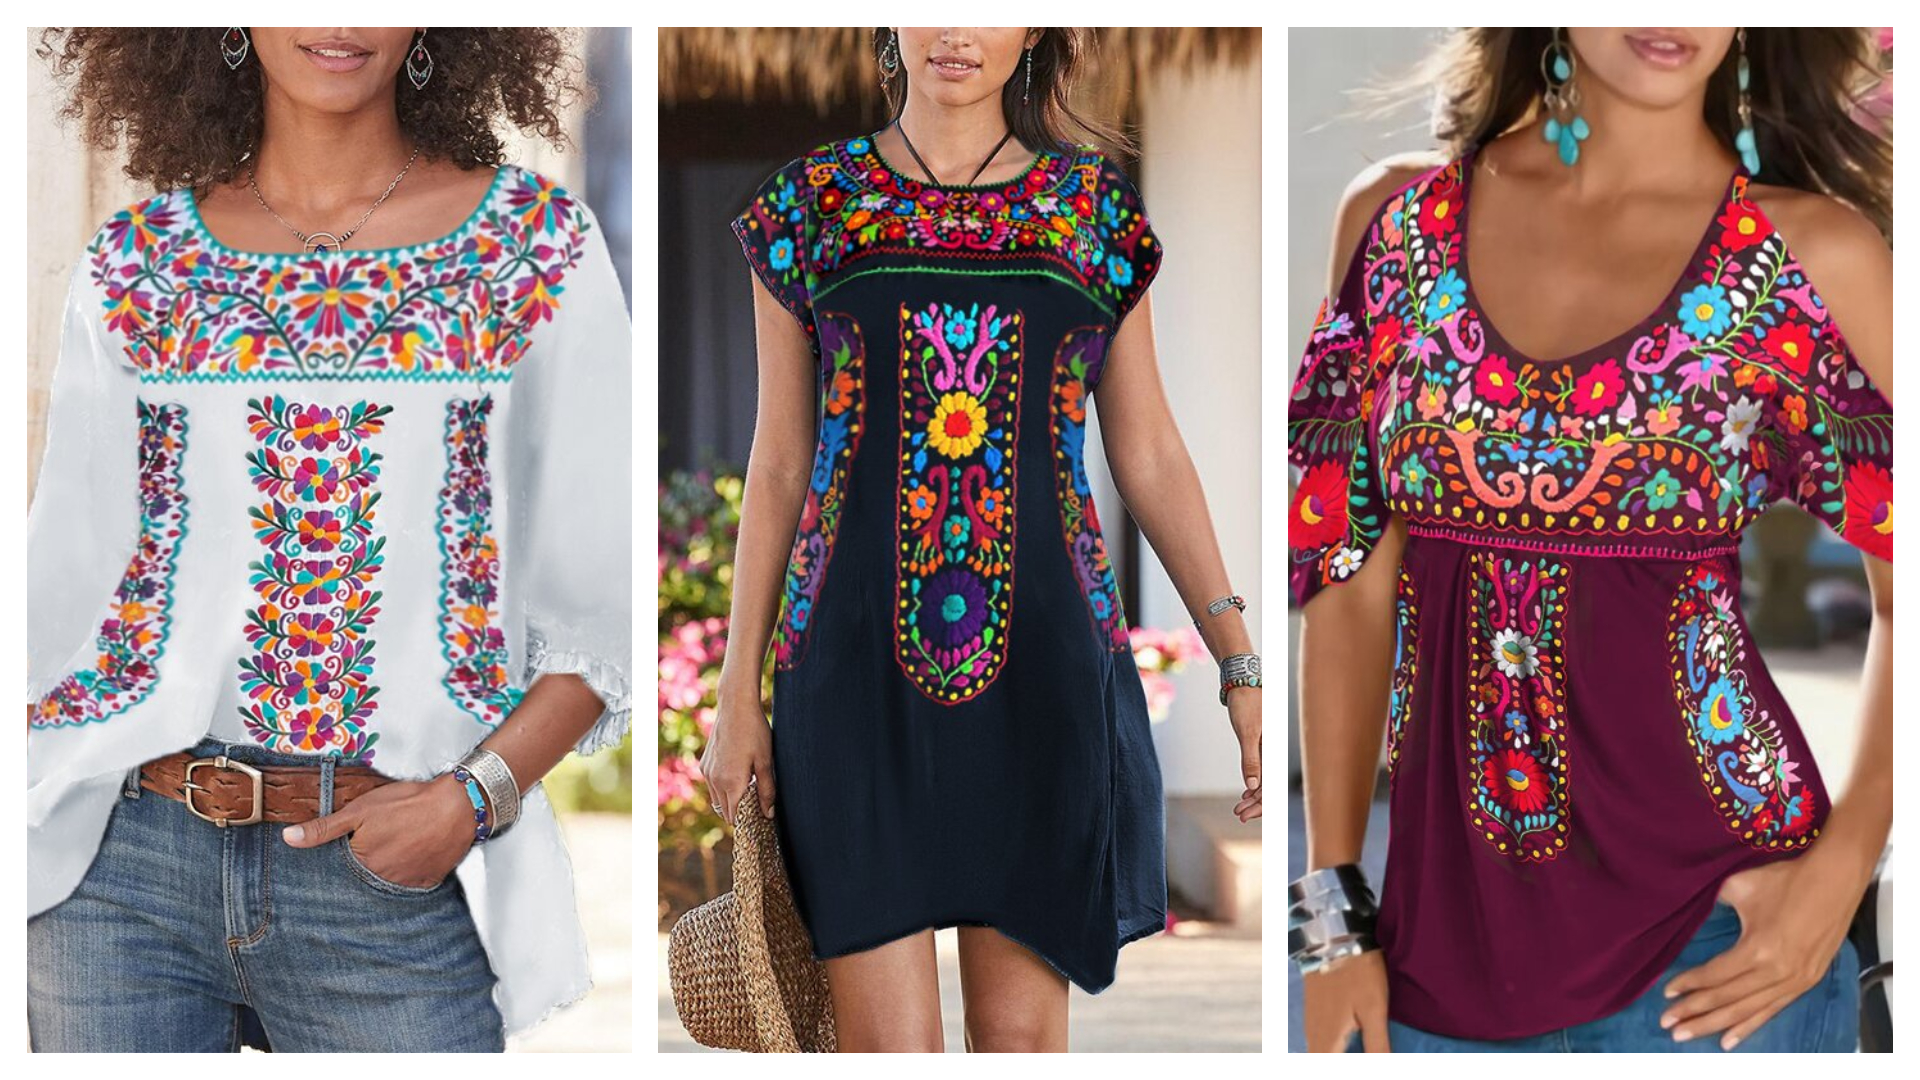 Secretaría de Cultura acusó a Zara, Anthropologie y Potowl de usar diseños  oaxaqueños en su colección de ropa - Infobae